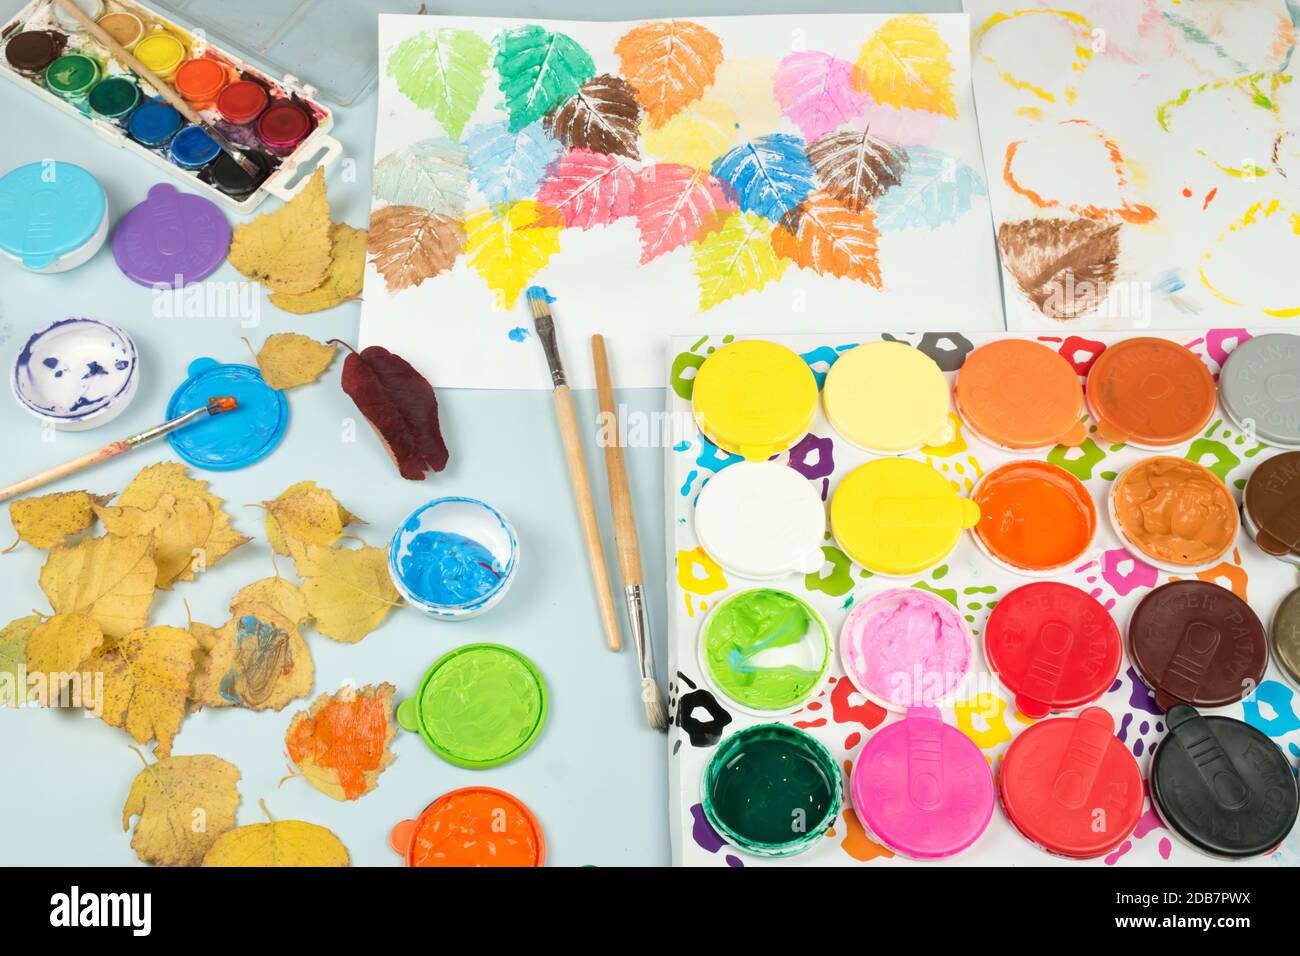 Vernici per le dita e acquerelli sul tavolo per bambini. Foglie d'albero dipinte in autunno impressi sulla carta. Giocattoli per incoraggiare la creatività dei bambini. Foto Stock